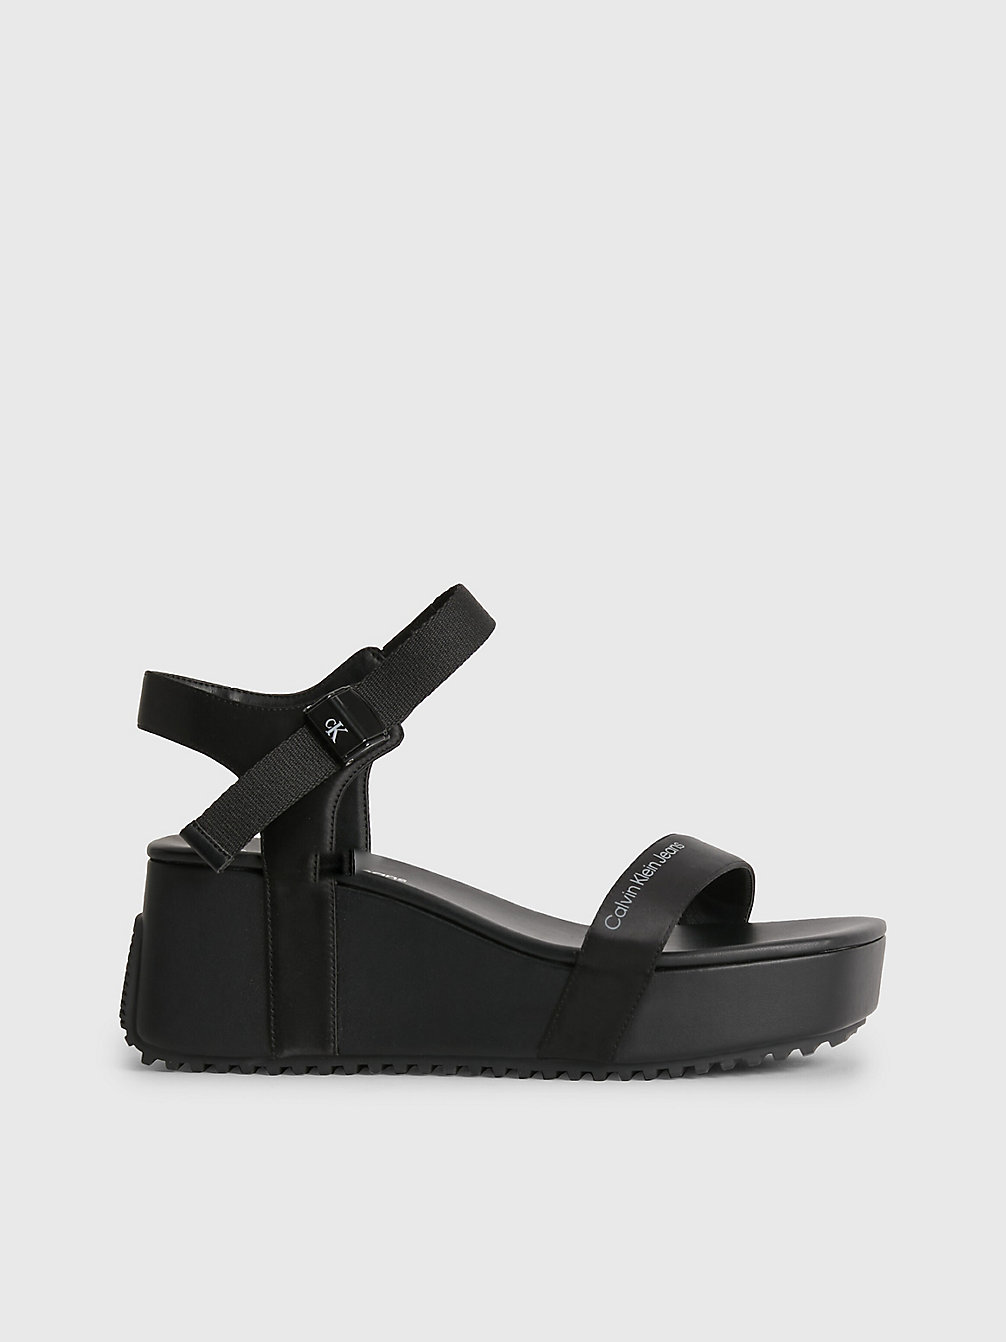 BLACK/OVERCAST GREY Recycled Satin Platform Wedge Sandals undefined women Calvin Klein